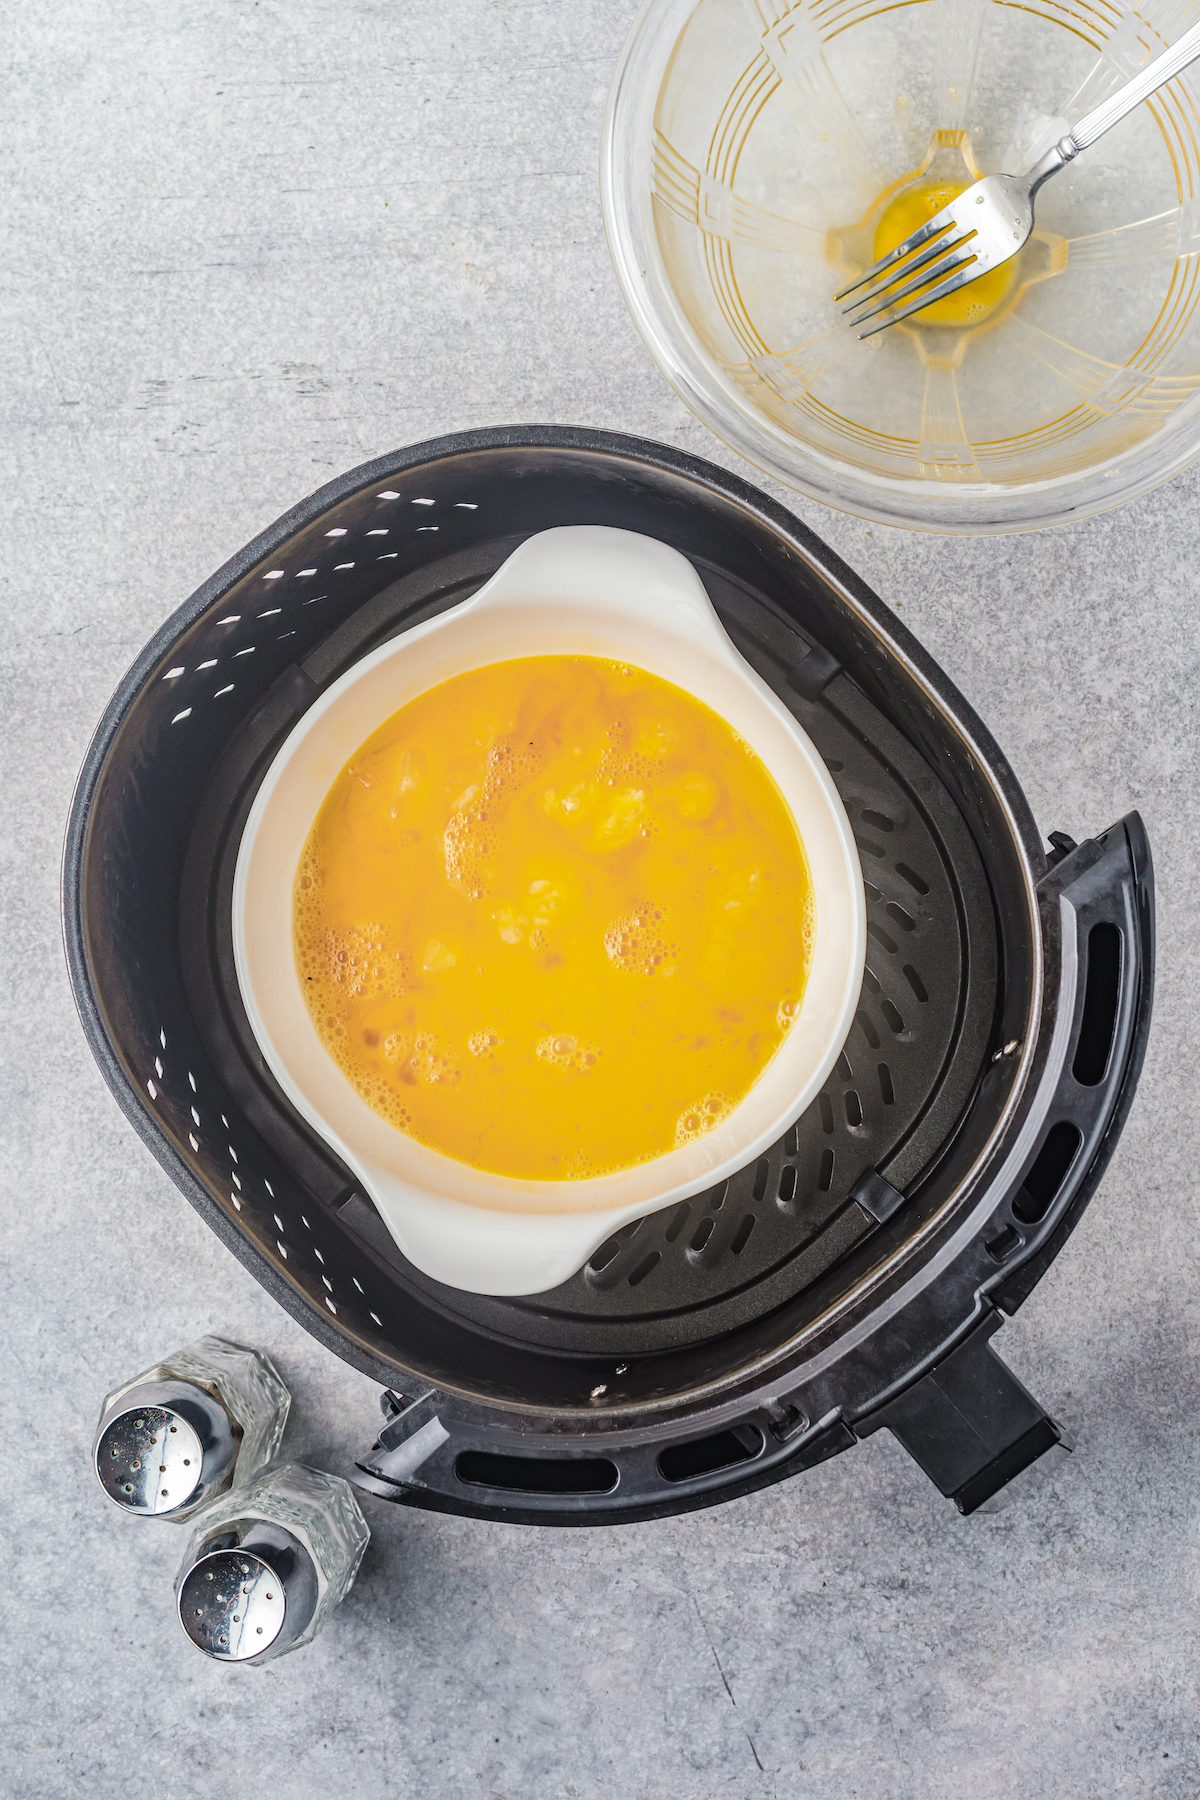 Partially scrambled eggs in a pot inside an air fryer.